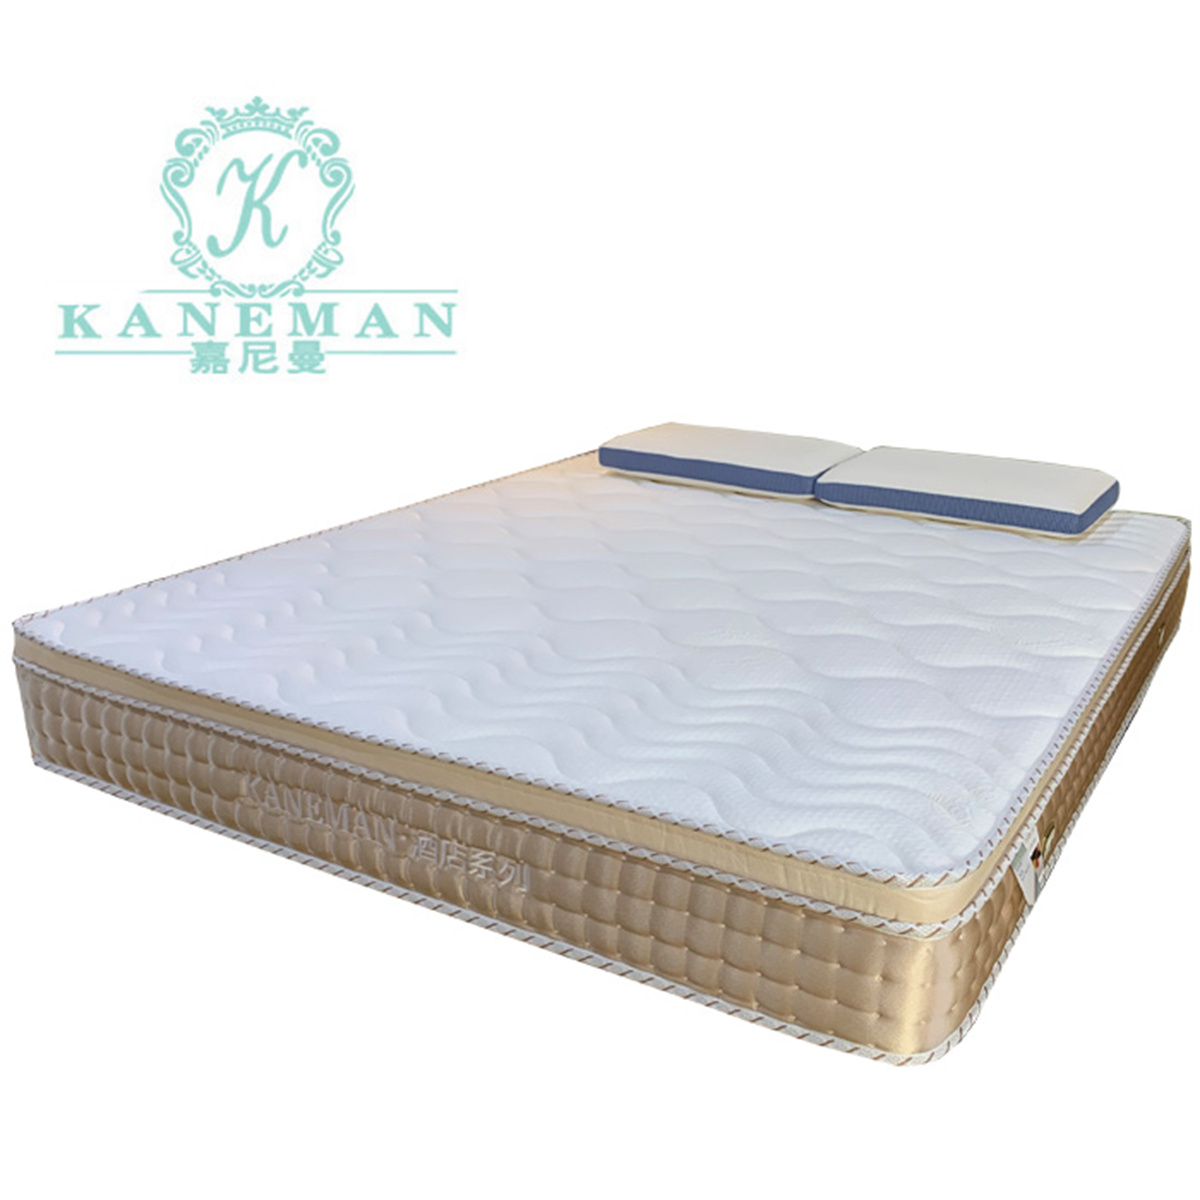 ຫ້ອງນອນໂຮງແຮມ 5 ດາວ ເຄື່ອງເຟີນີເຈີຫ້ອງນອນ Royal comfort pillow euro top memory foam pocket spring wholesale king size luxury black mattress